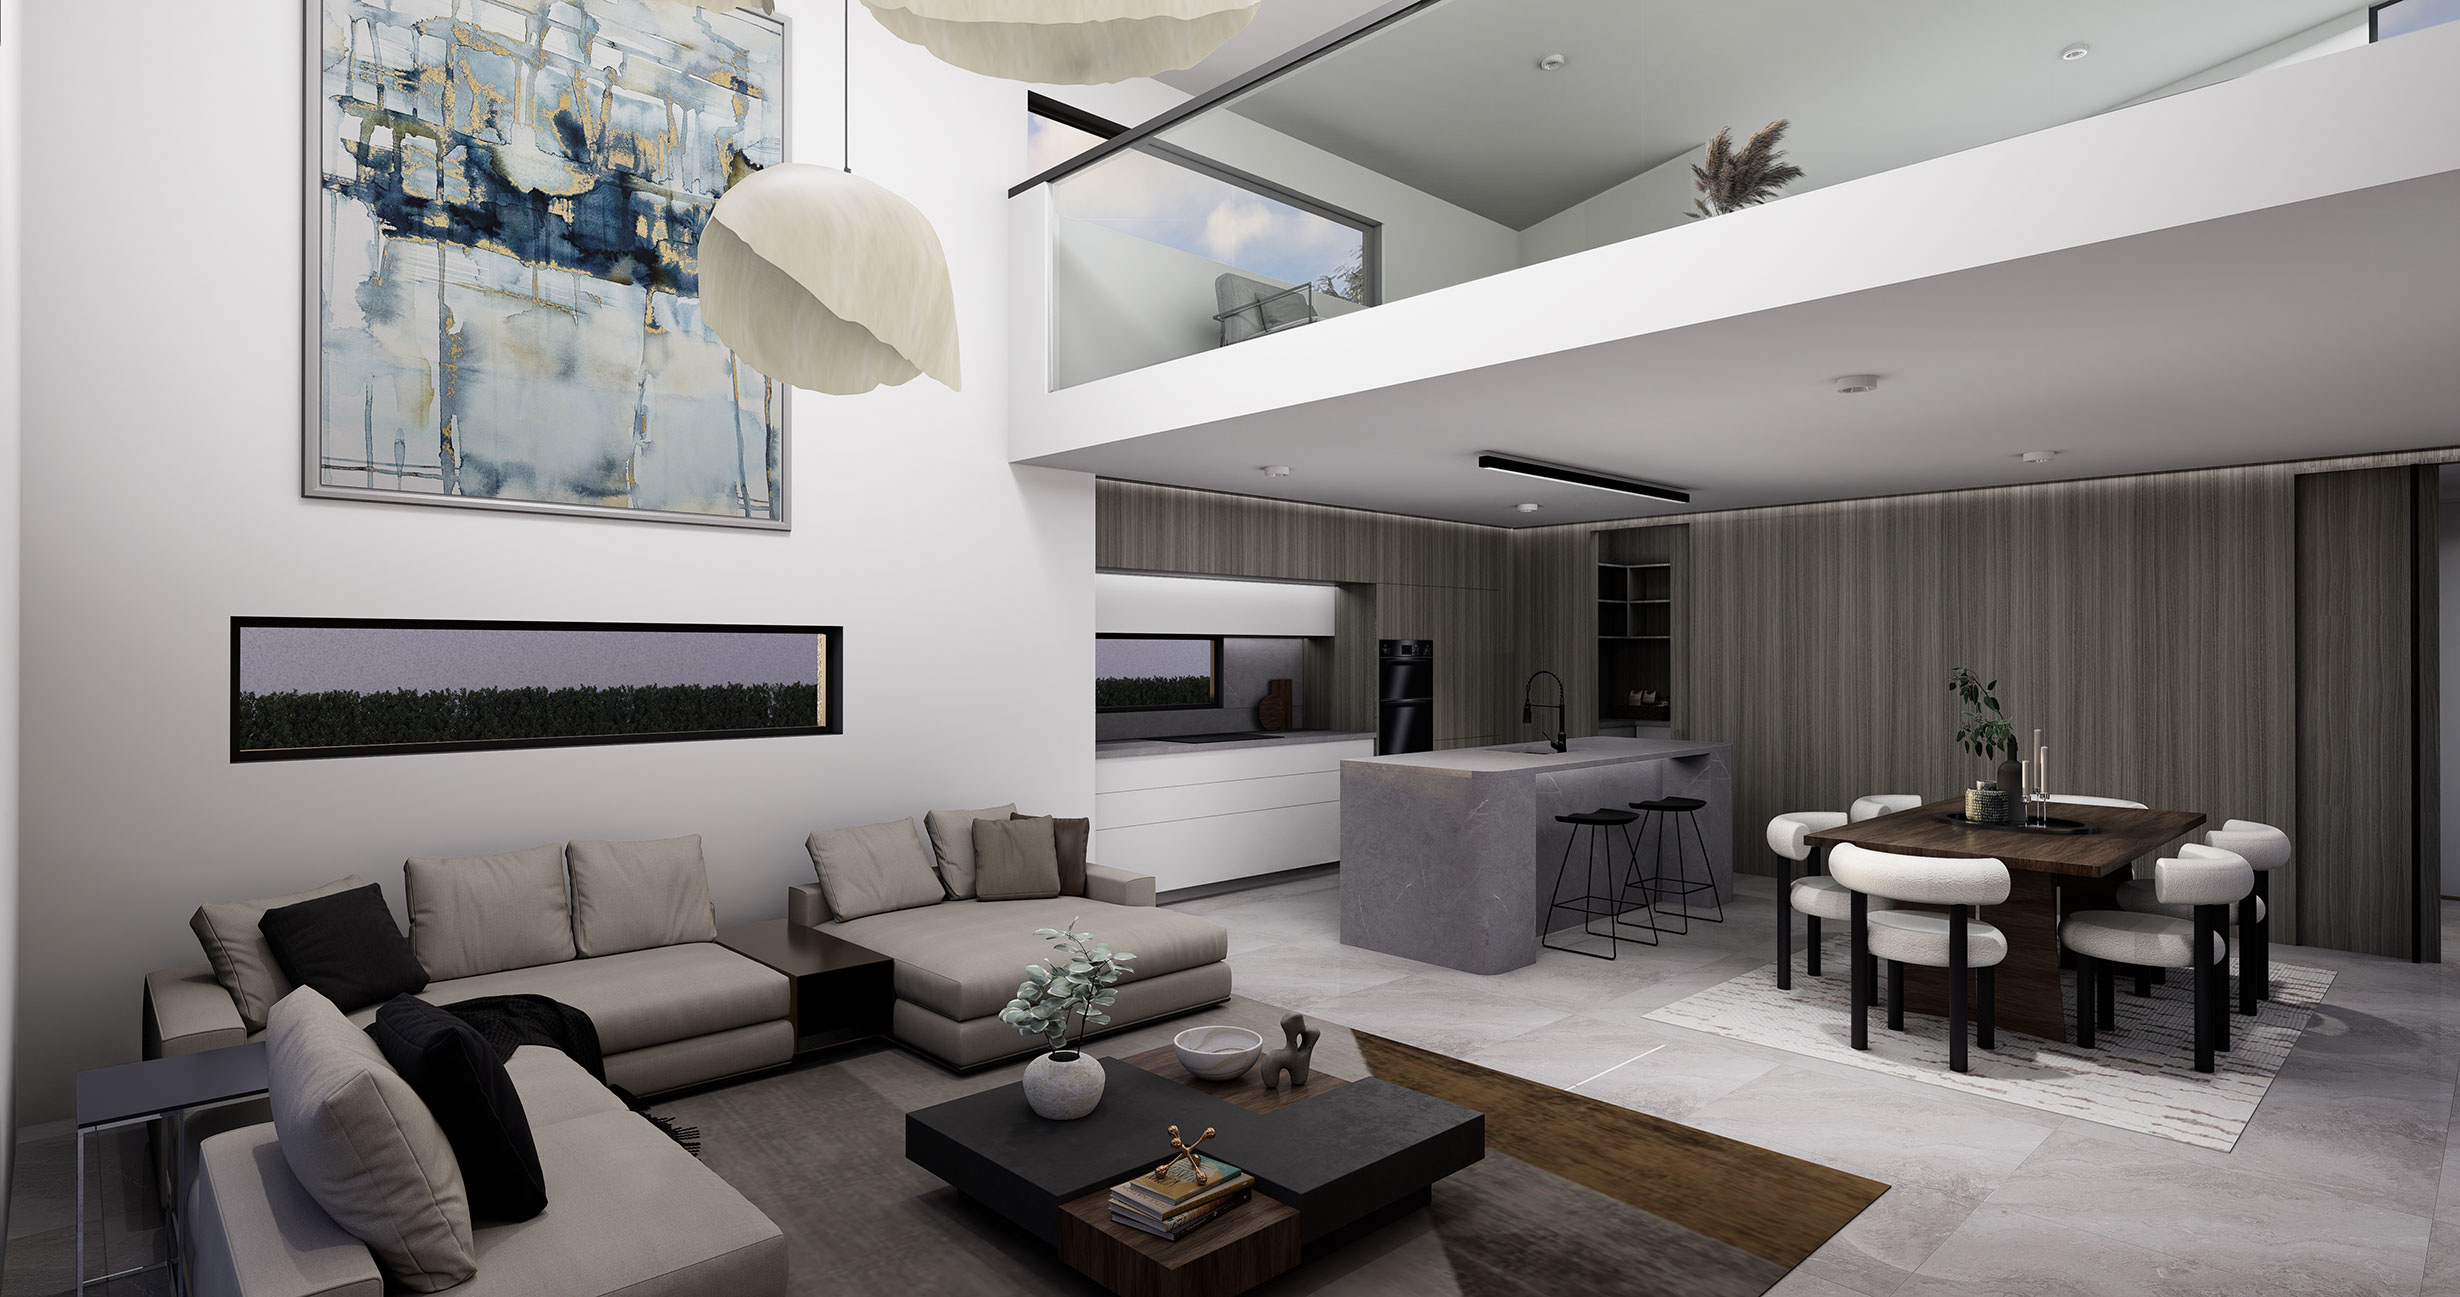 Hallmark Homes Prestige Series Cheviot House Plan Interior View Design Christchurch NZ.